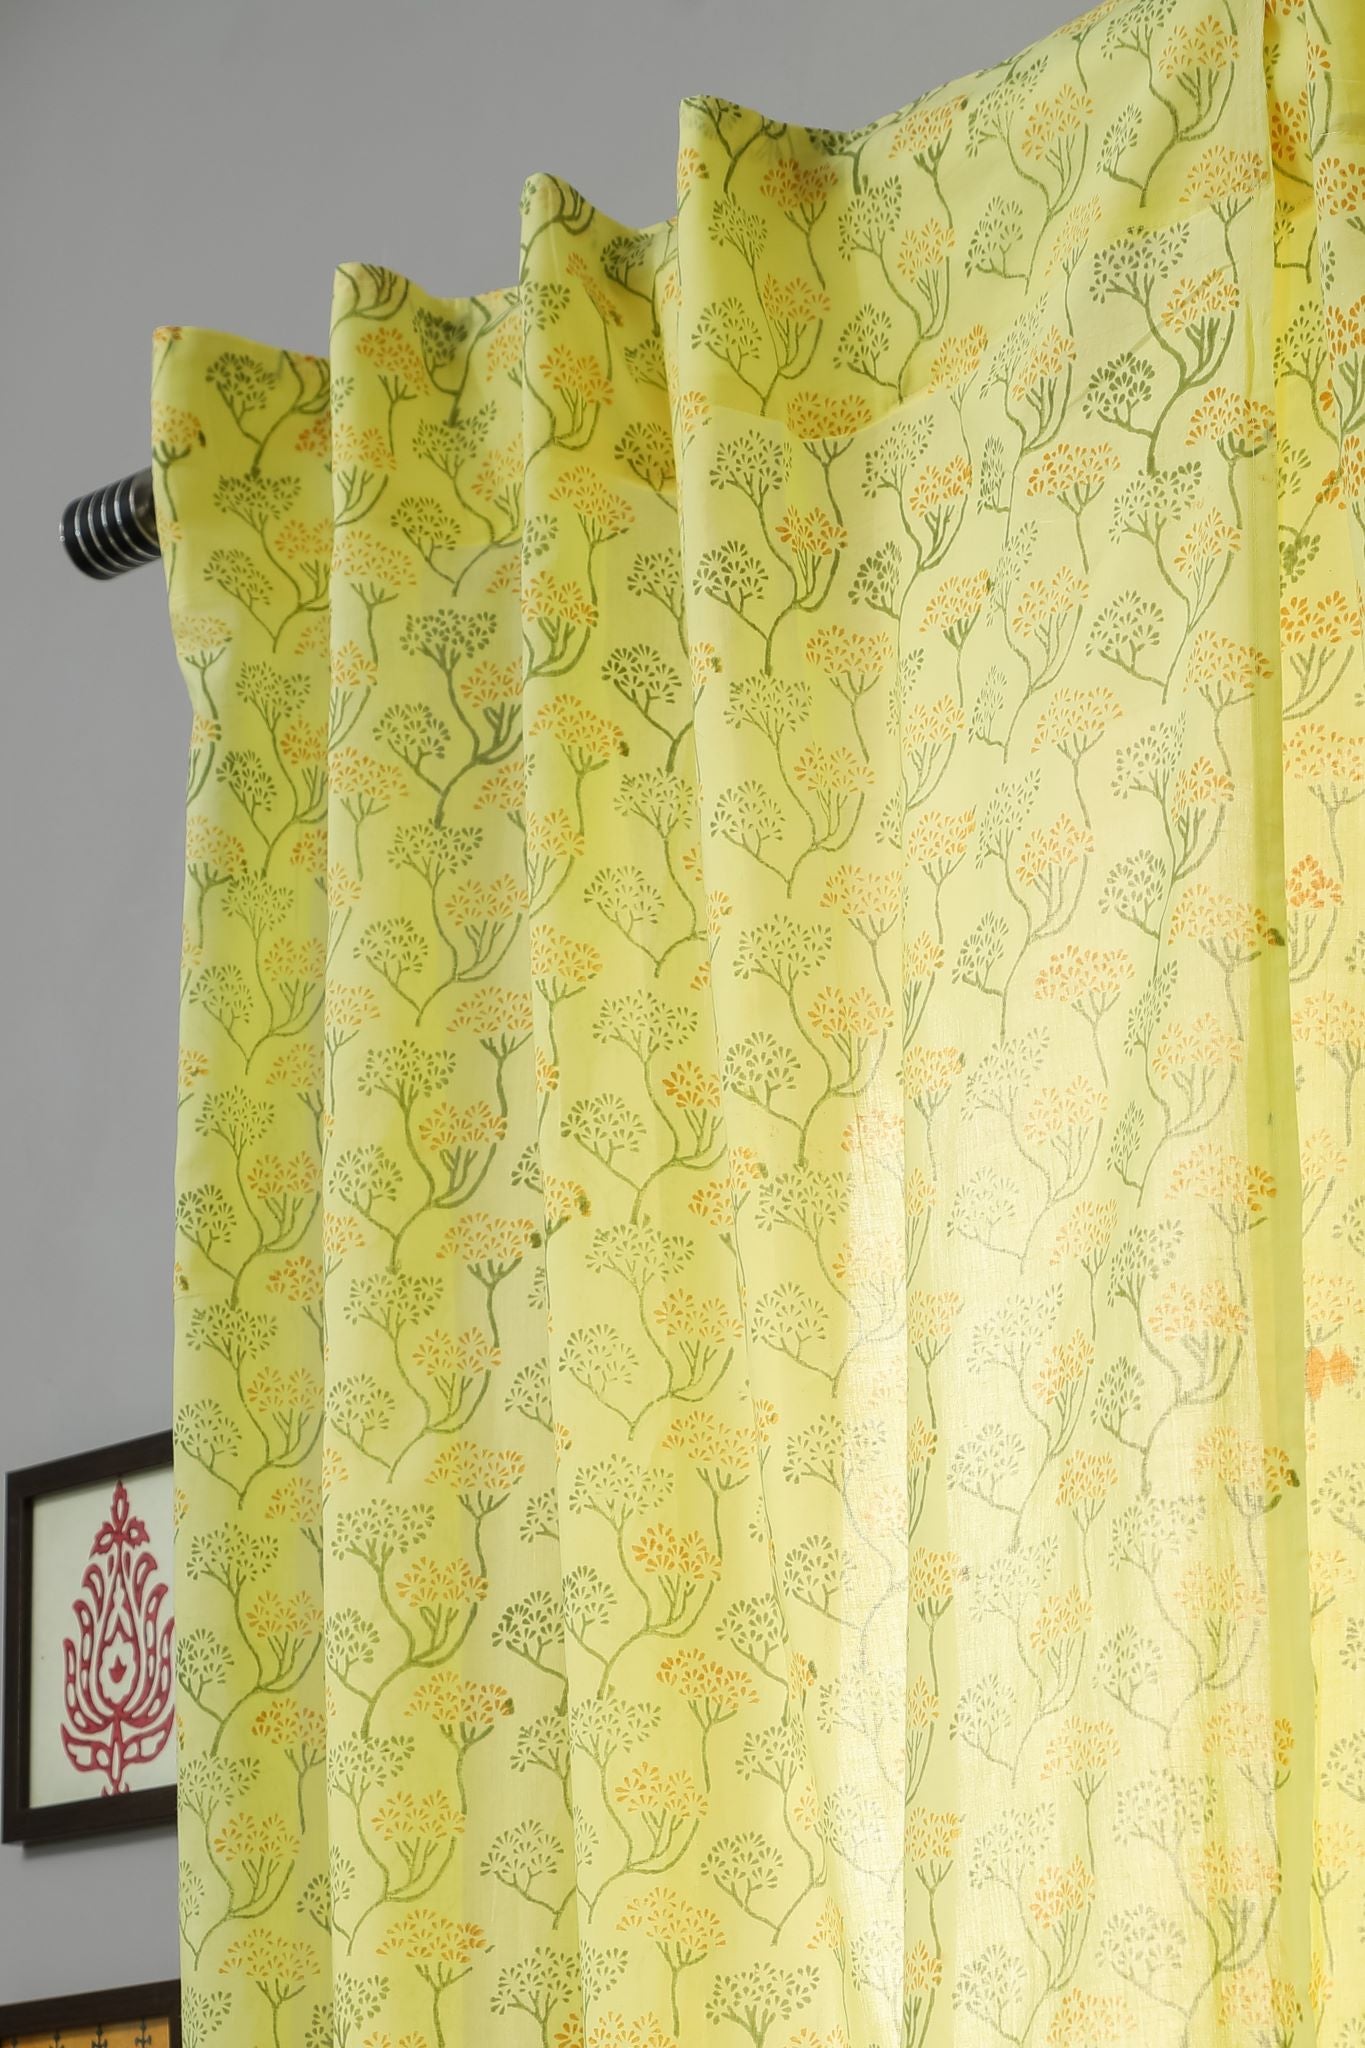 SootiSyahi 'Yellow Yarrows' Handblock Printed Cotton Door Curtain - SootiSyahi